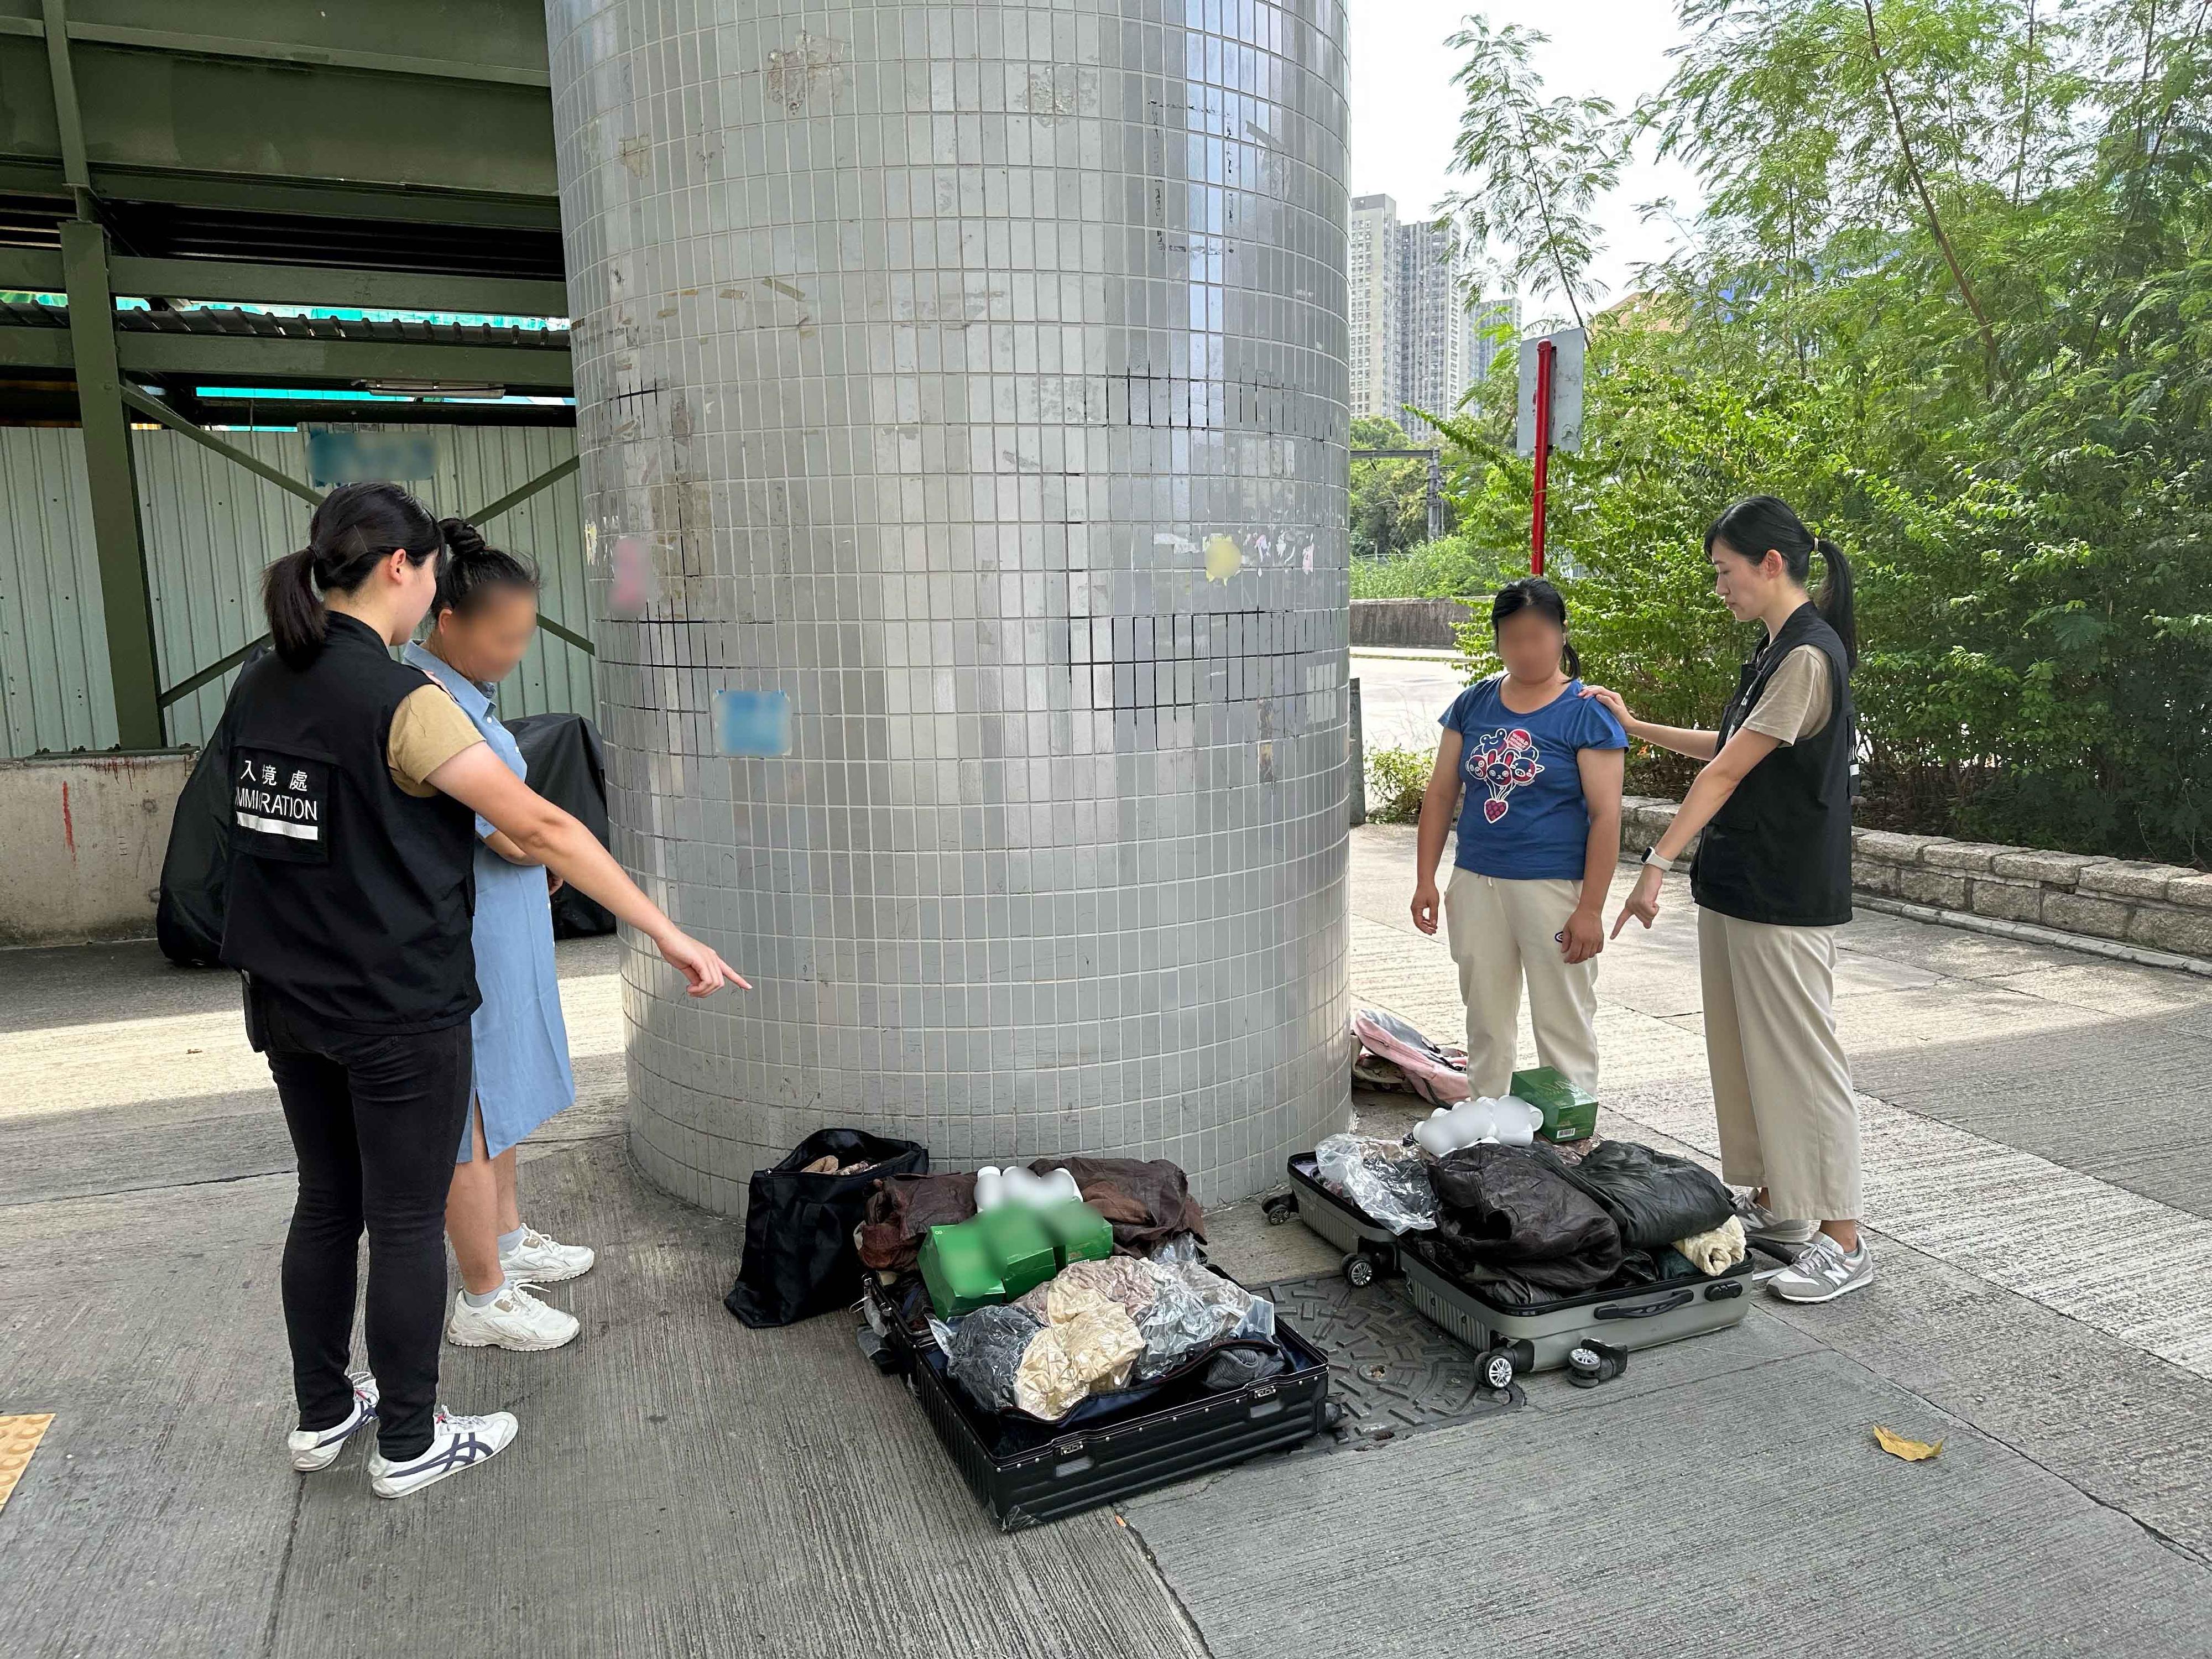 入境事务处十月三日至昨日（十月五日）一连三日在全港各区展开反非法劳工行动，分别是代号「光影行动」和「曙光行动」，及连同香港警务处执行的「风沙行动」。图示怀疑非法从事水货活动的内地旅客及用作水货用途的货物。